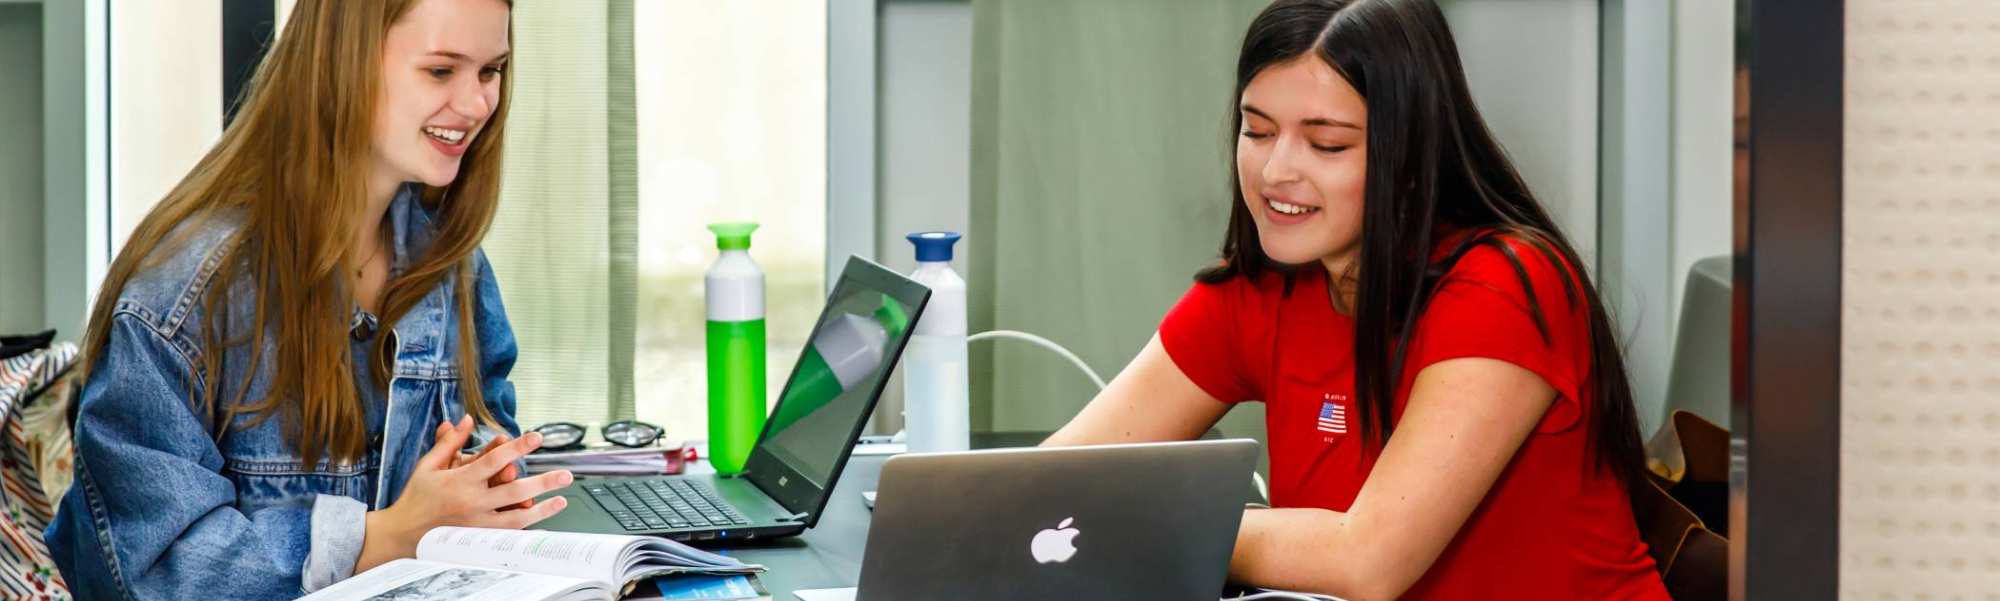 Twee meiden studeren samen met boeken en laptop een meisje rood shirt